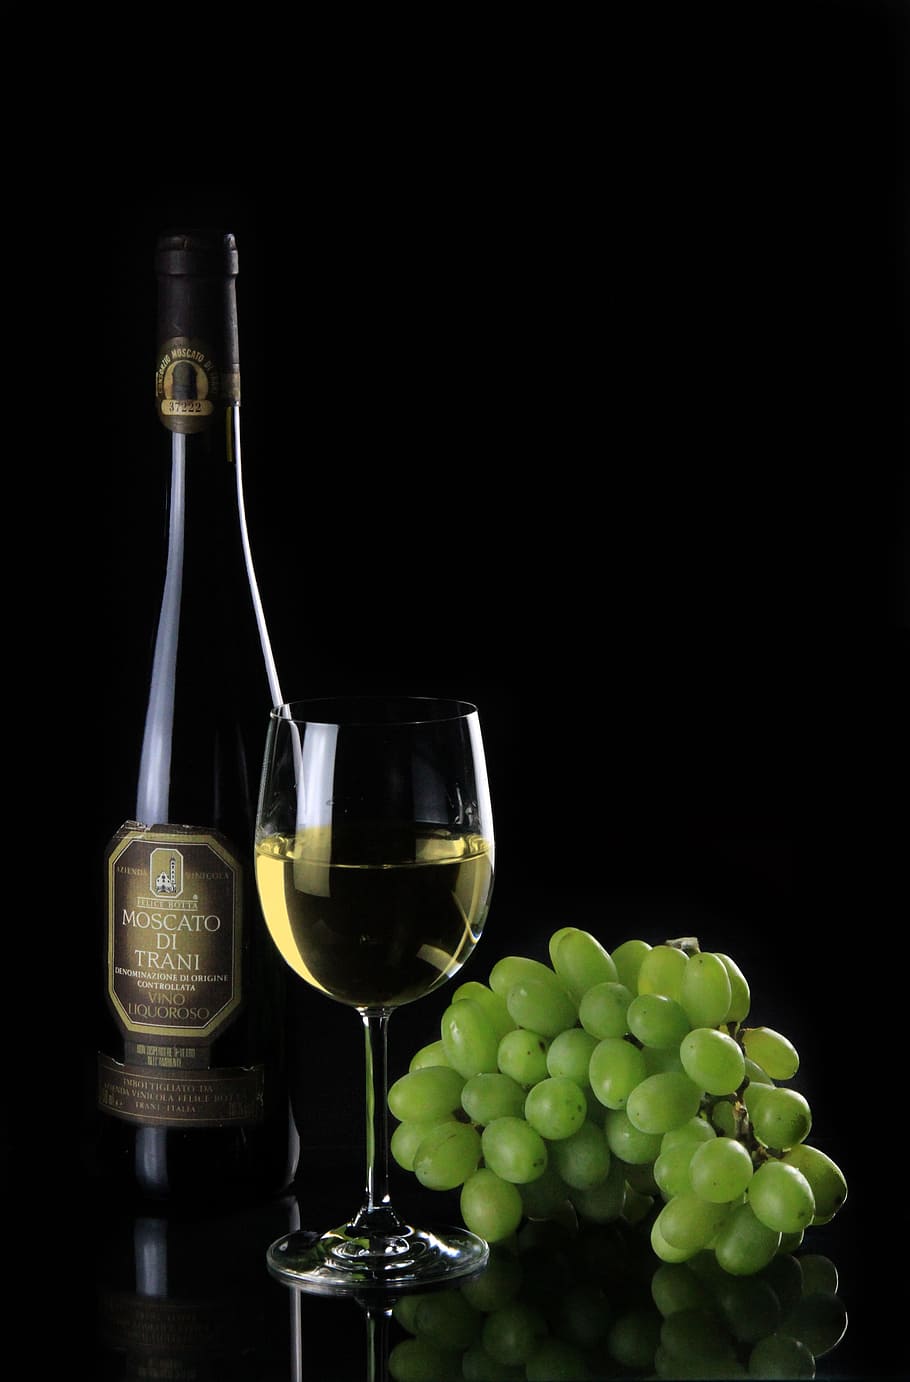 di, trani, wine, bottle, glass, green, grapes, Moscato, Di Trani, wine bottle